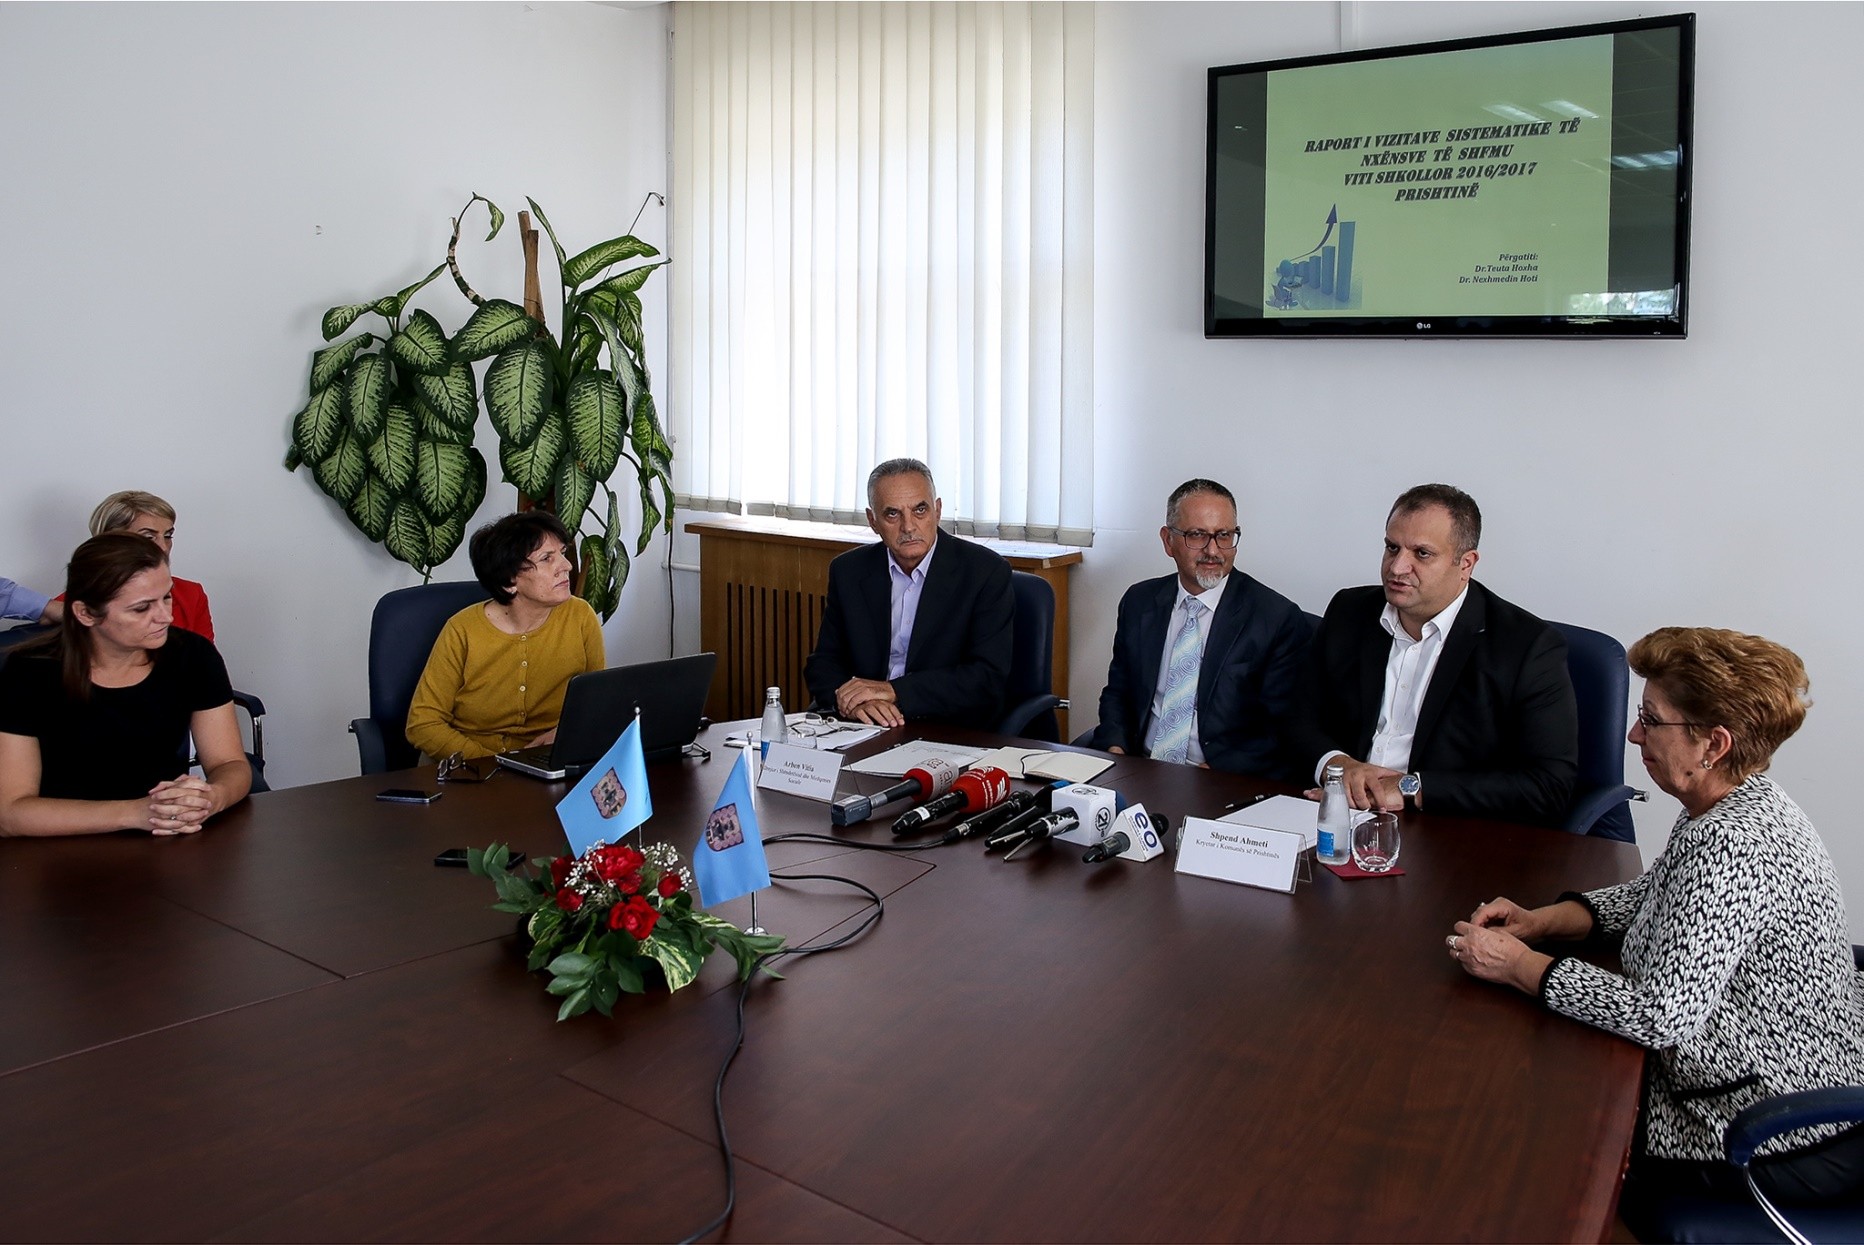 Komuna e Prishtinës kreu vizitat shëndetësore në shkollat e Prishtinës